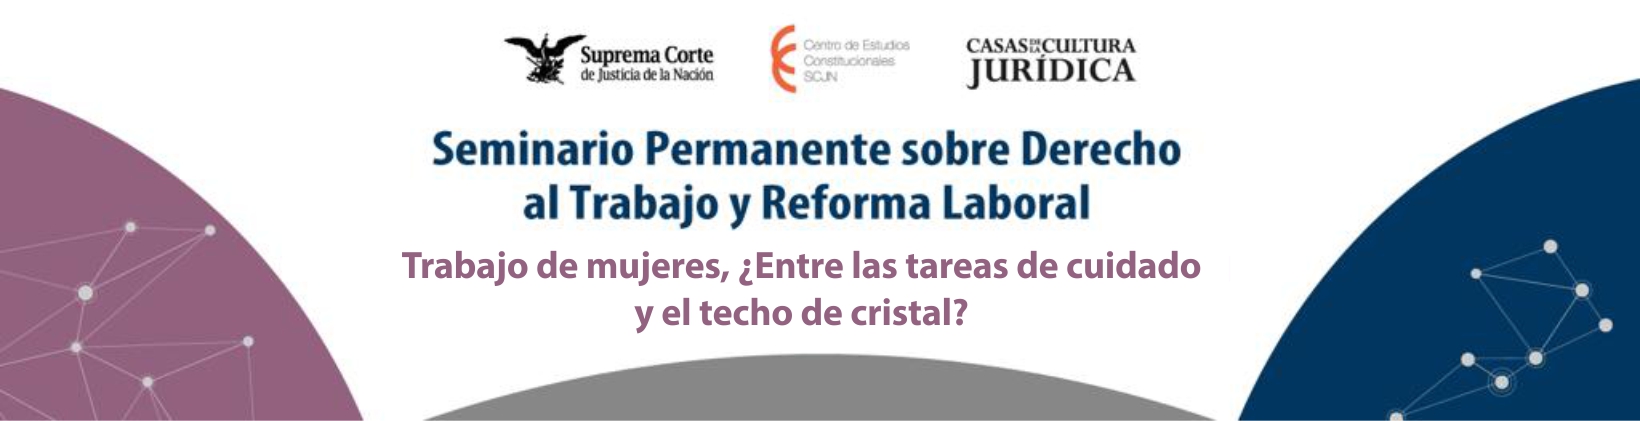 Banner del Seminario Permanente sobre Derecho al Trabajo y Reforma Laboral